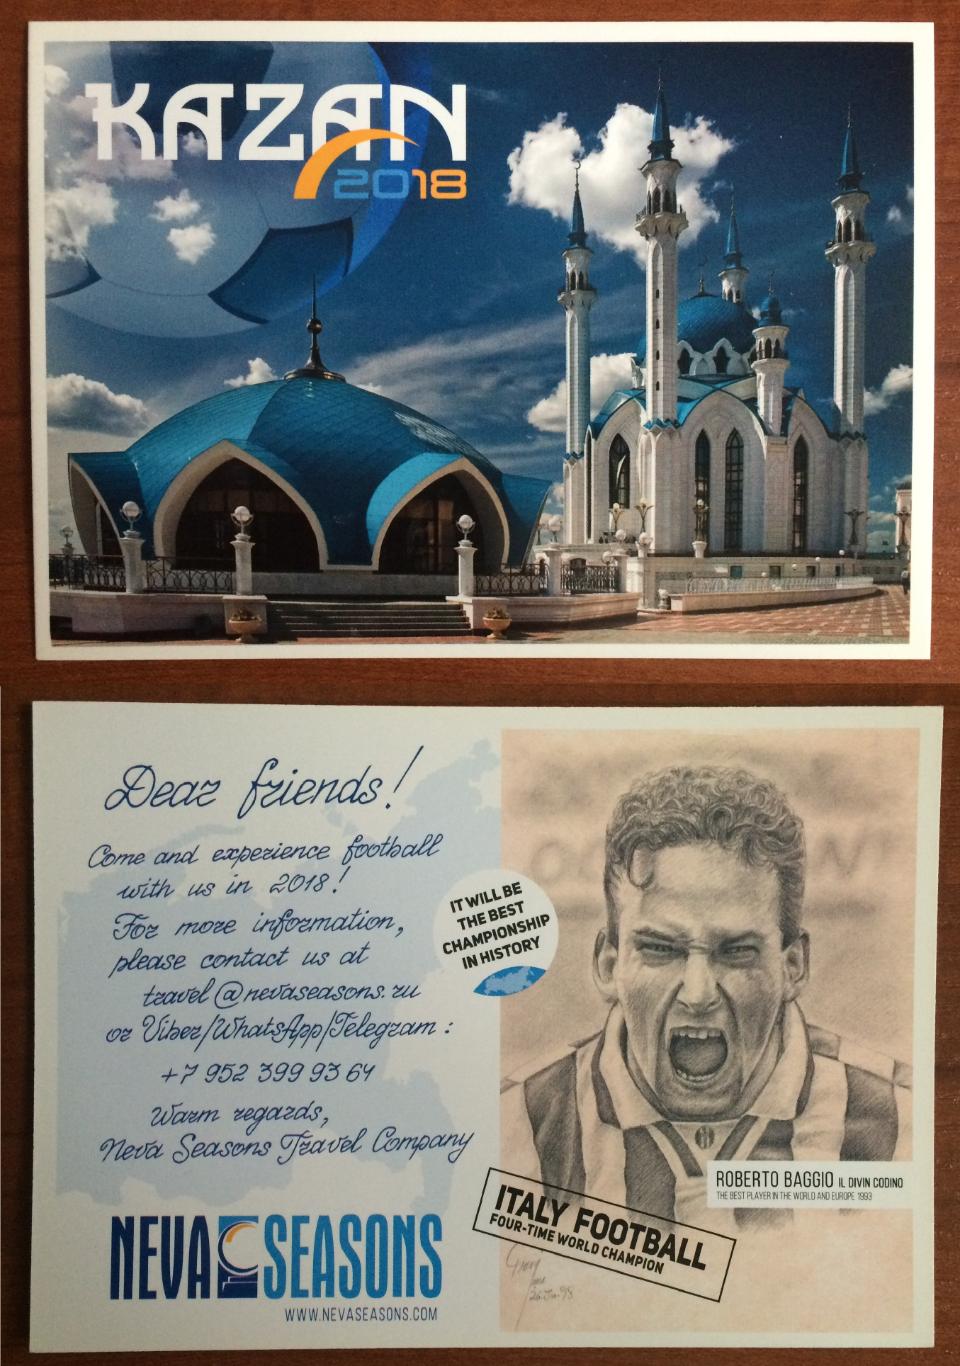 Рекламная открытка ЧМ 2018 по футболу в России г. Казань Роберто Баджо